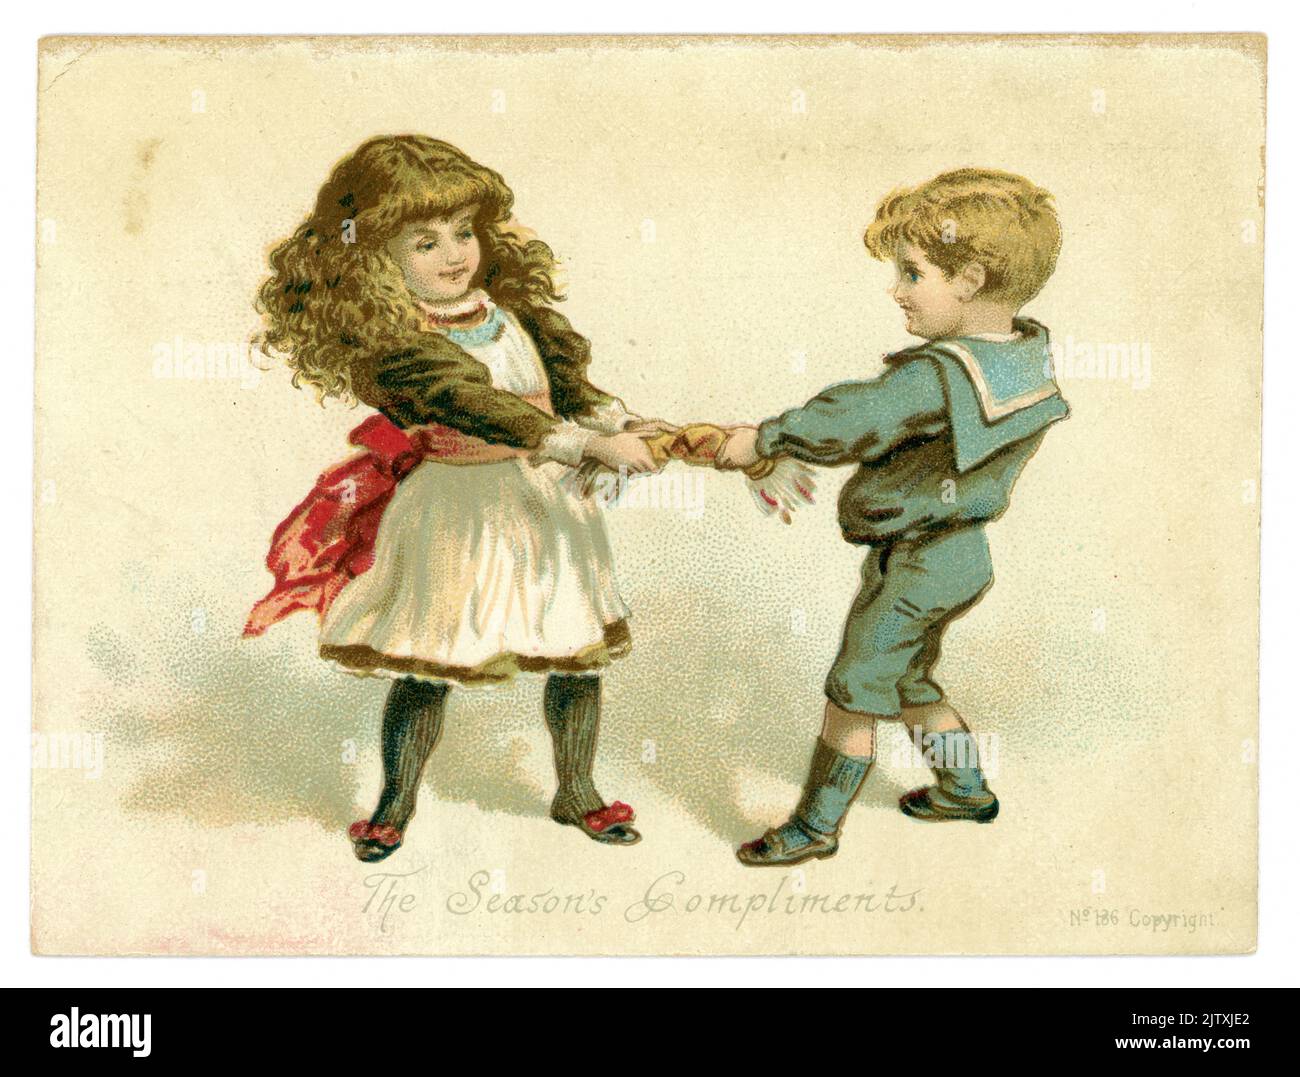 Original, charmante carte de voeux victorienne de Noël jeune garçon et fille victoriens tirant un craquelin. Le garçon est vêtu d'un costume de marin, la fille a de longs cheveux en vagues, la légende est «les compliments de la saison», daté de 1887, Royaume-Uni Banque D'Images